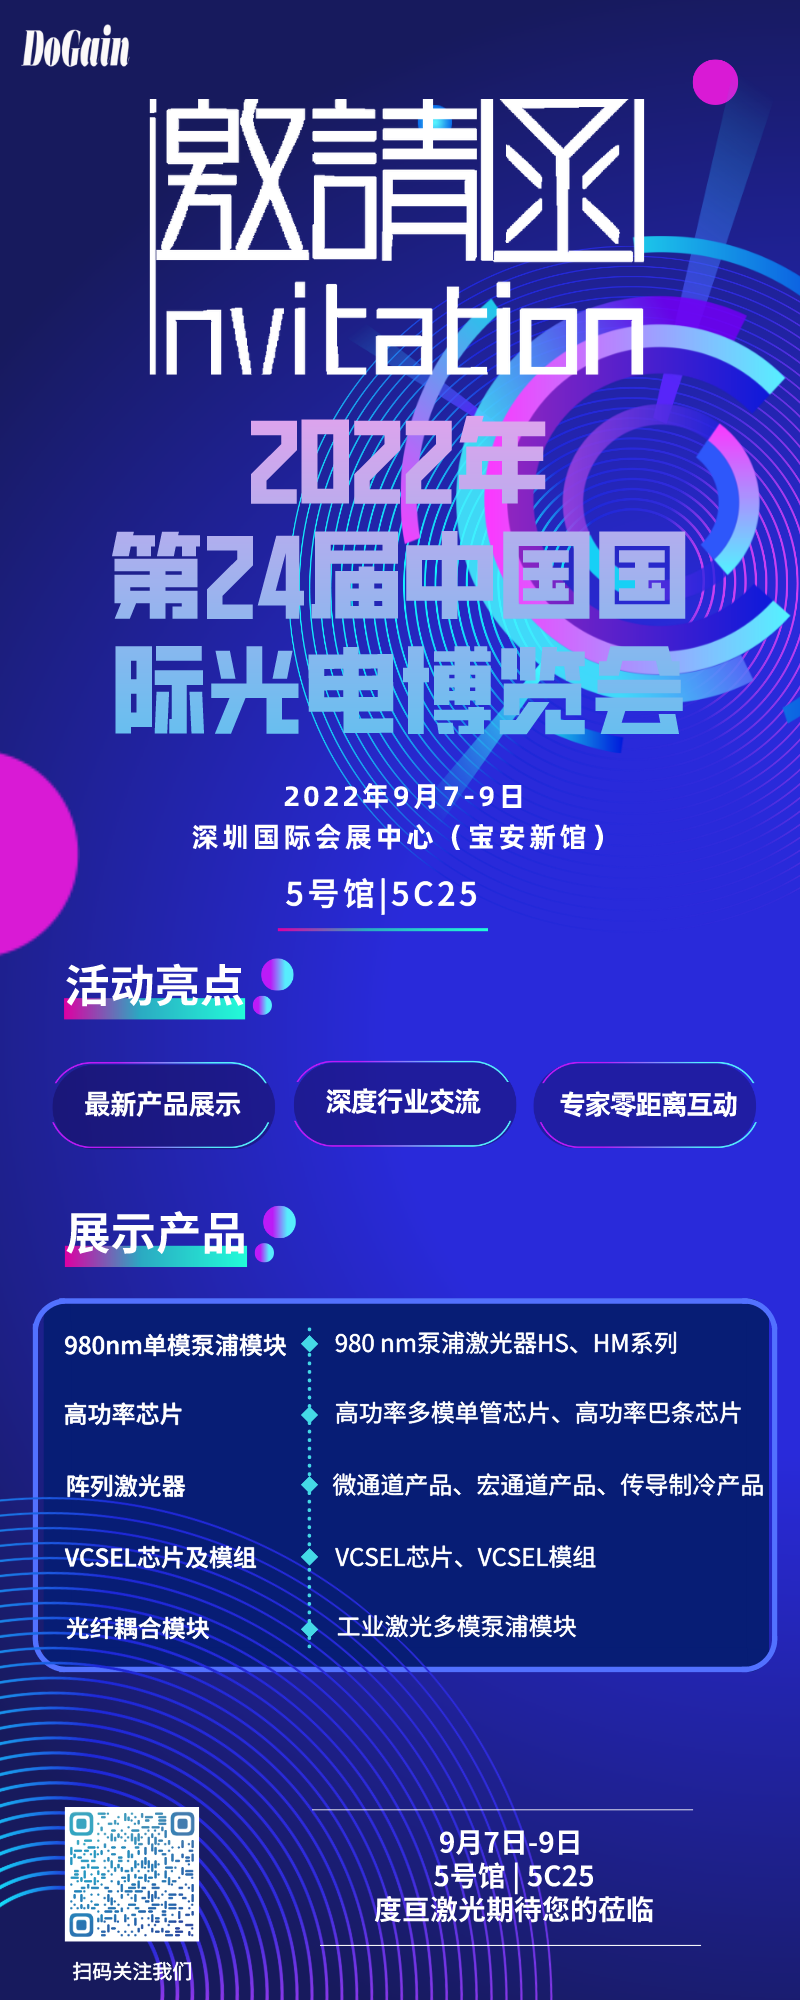 展会邀约| 9月7-9日，银河在线游戏娱乐邀您共赴深圳光博会